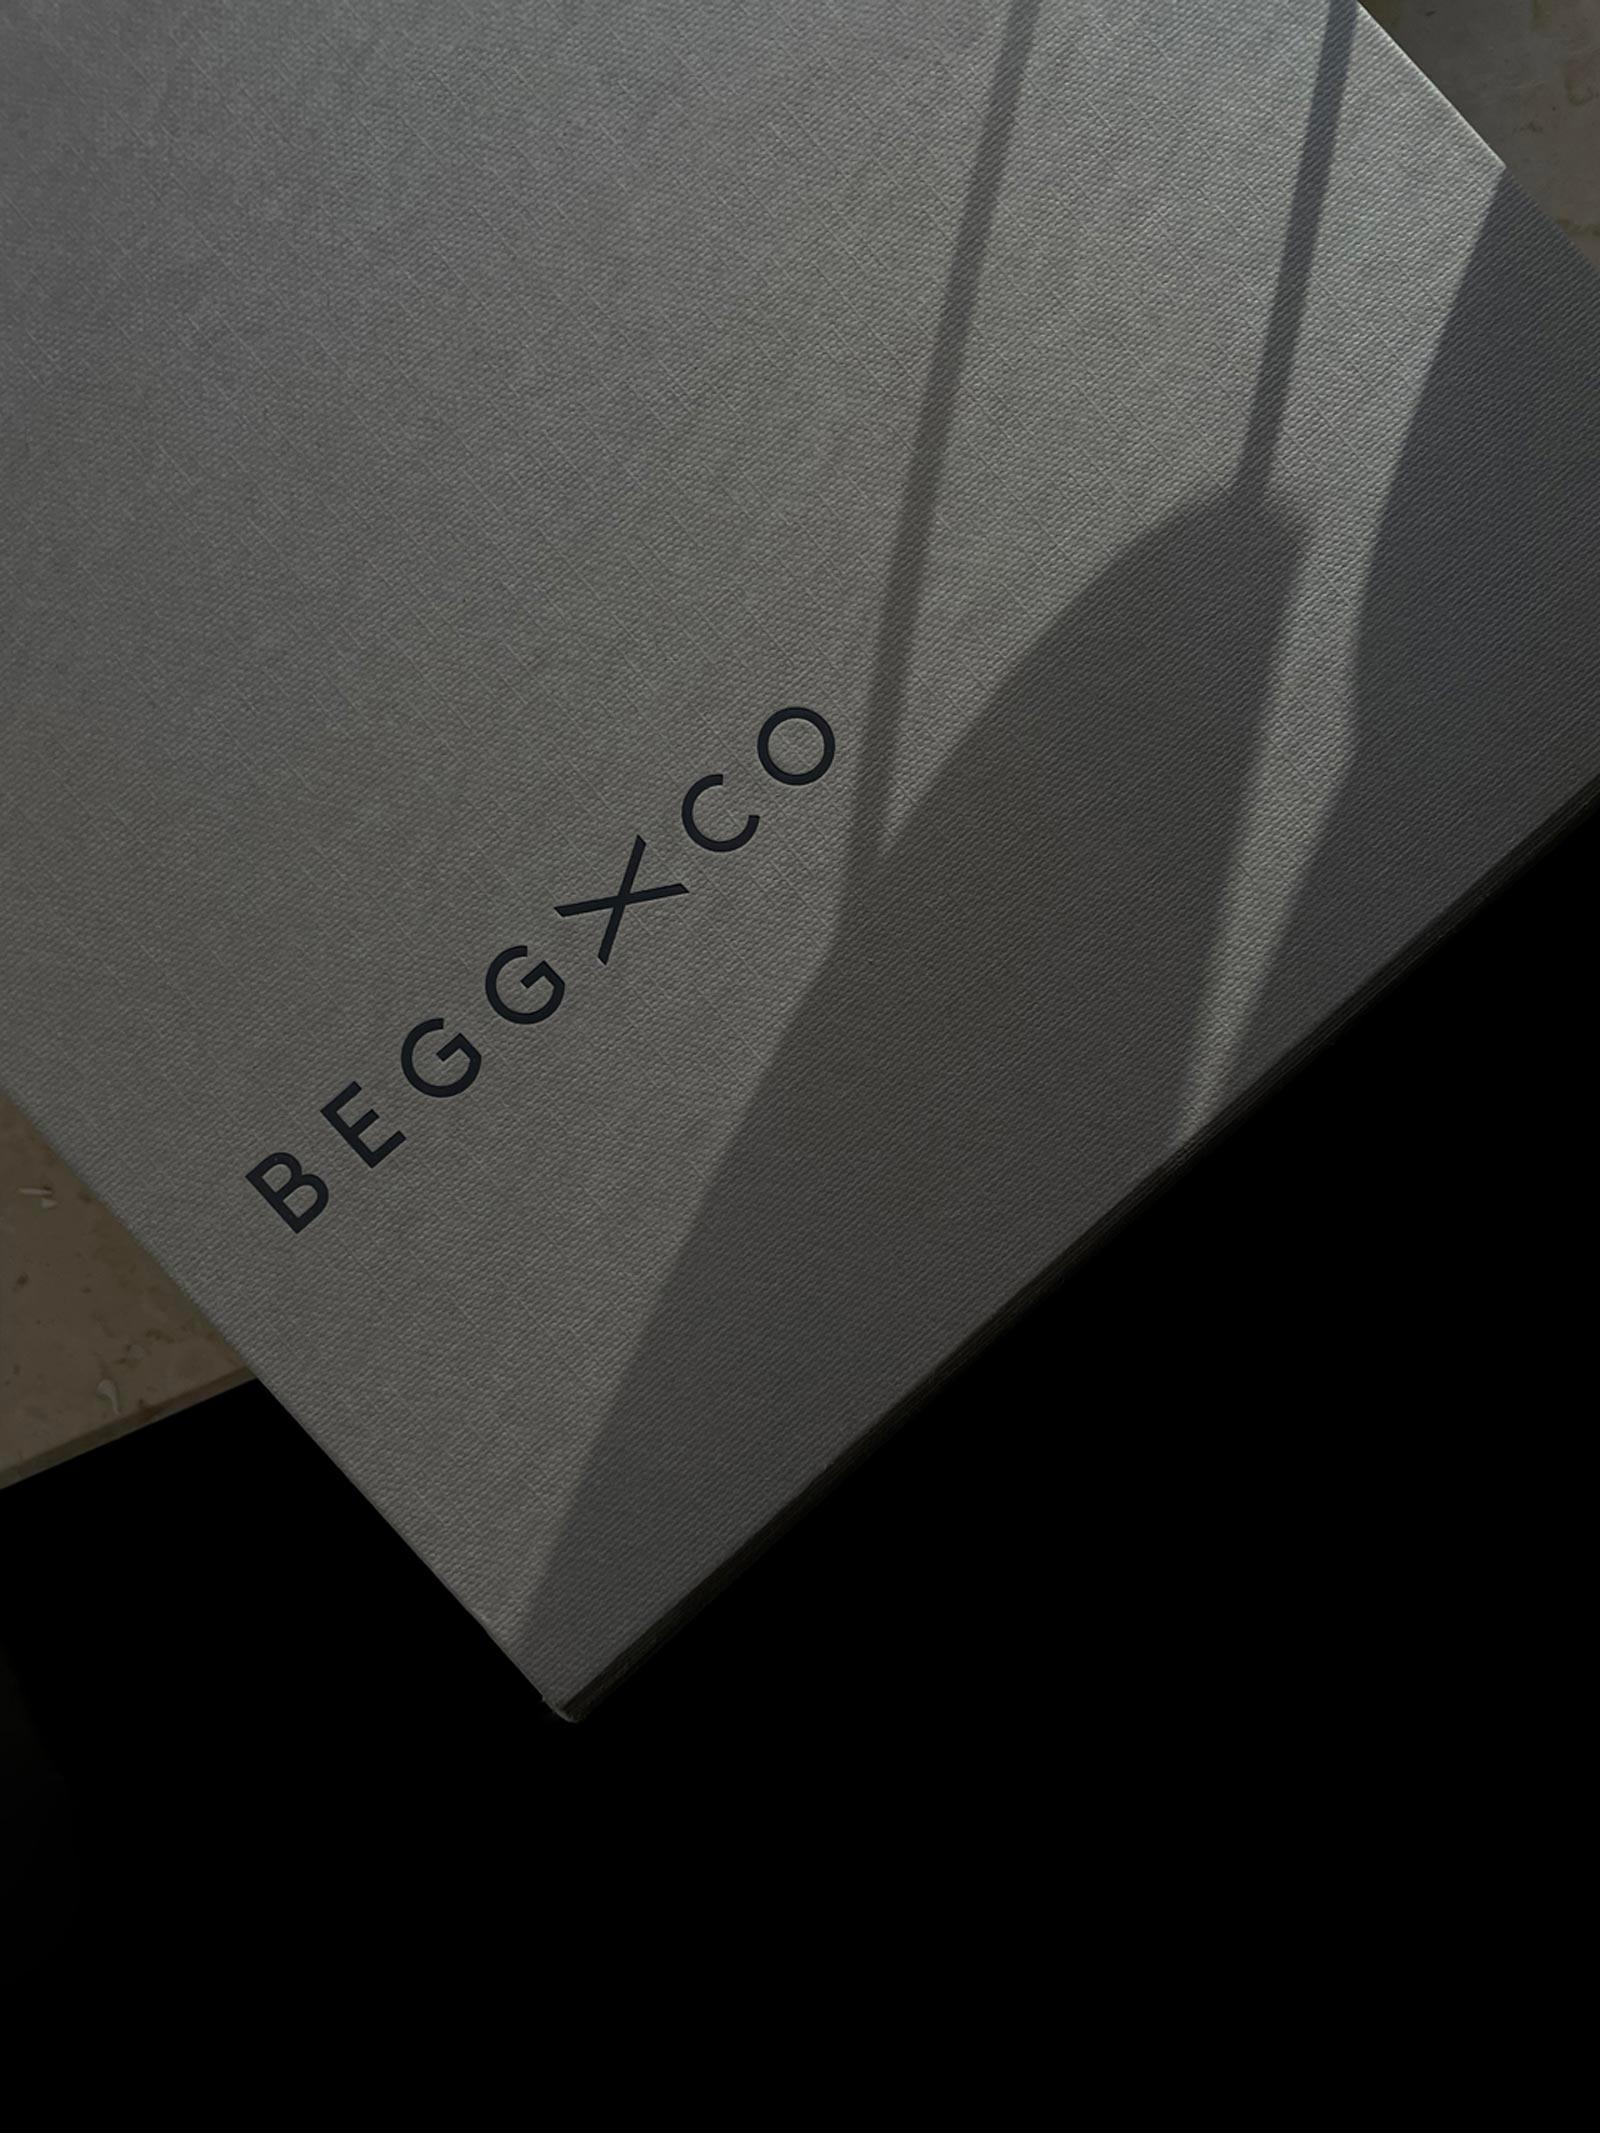 LWCO—Begg–Packaging04